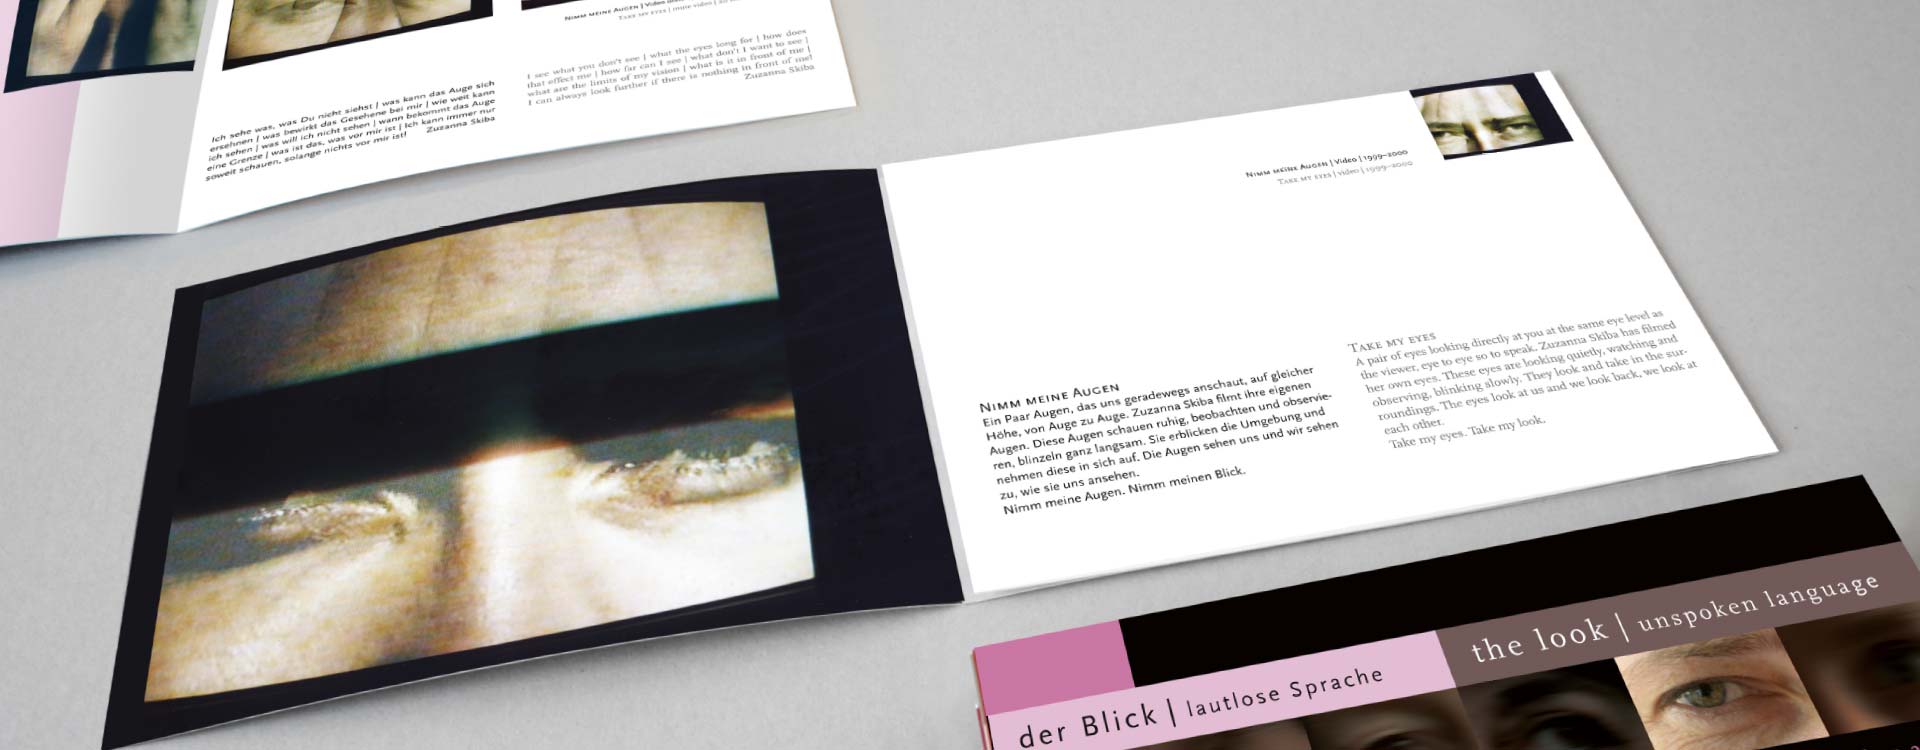 Leaflet about the work of Zuzanna Skiba in the exhibition Der Blick; Design: Kattrin Richter | Graphic Design Studio